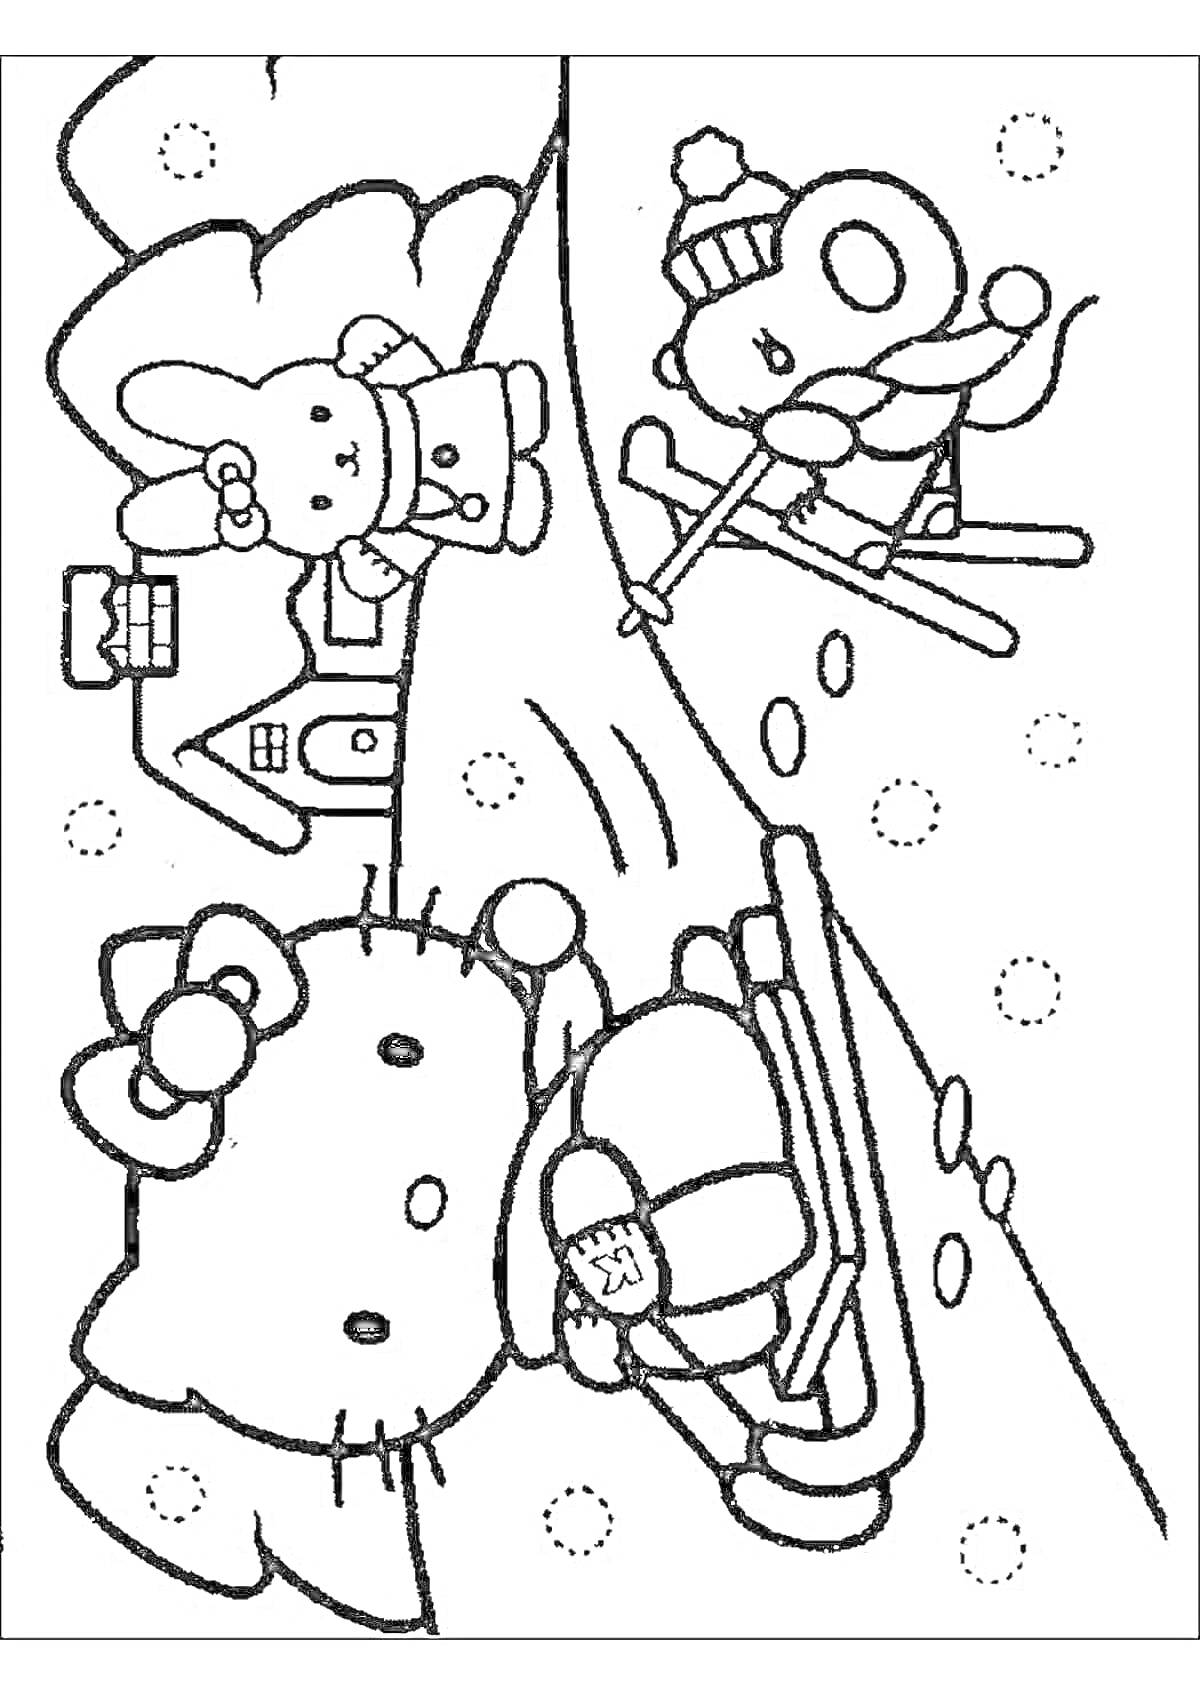 Раскраска Китти с подарком на санках, друг на лыжах и заяц возле елки на новогоднем фоне